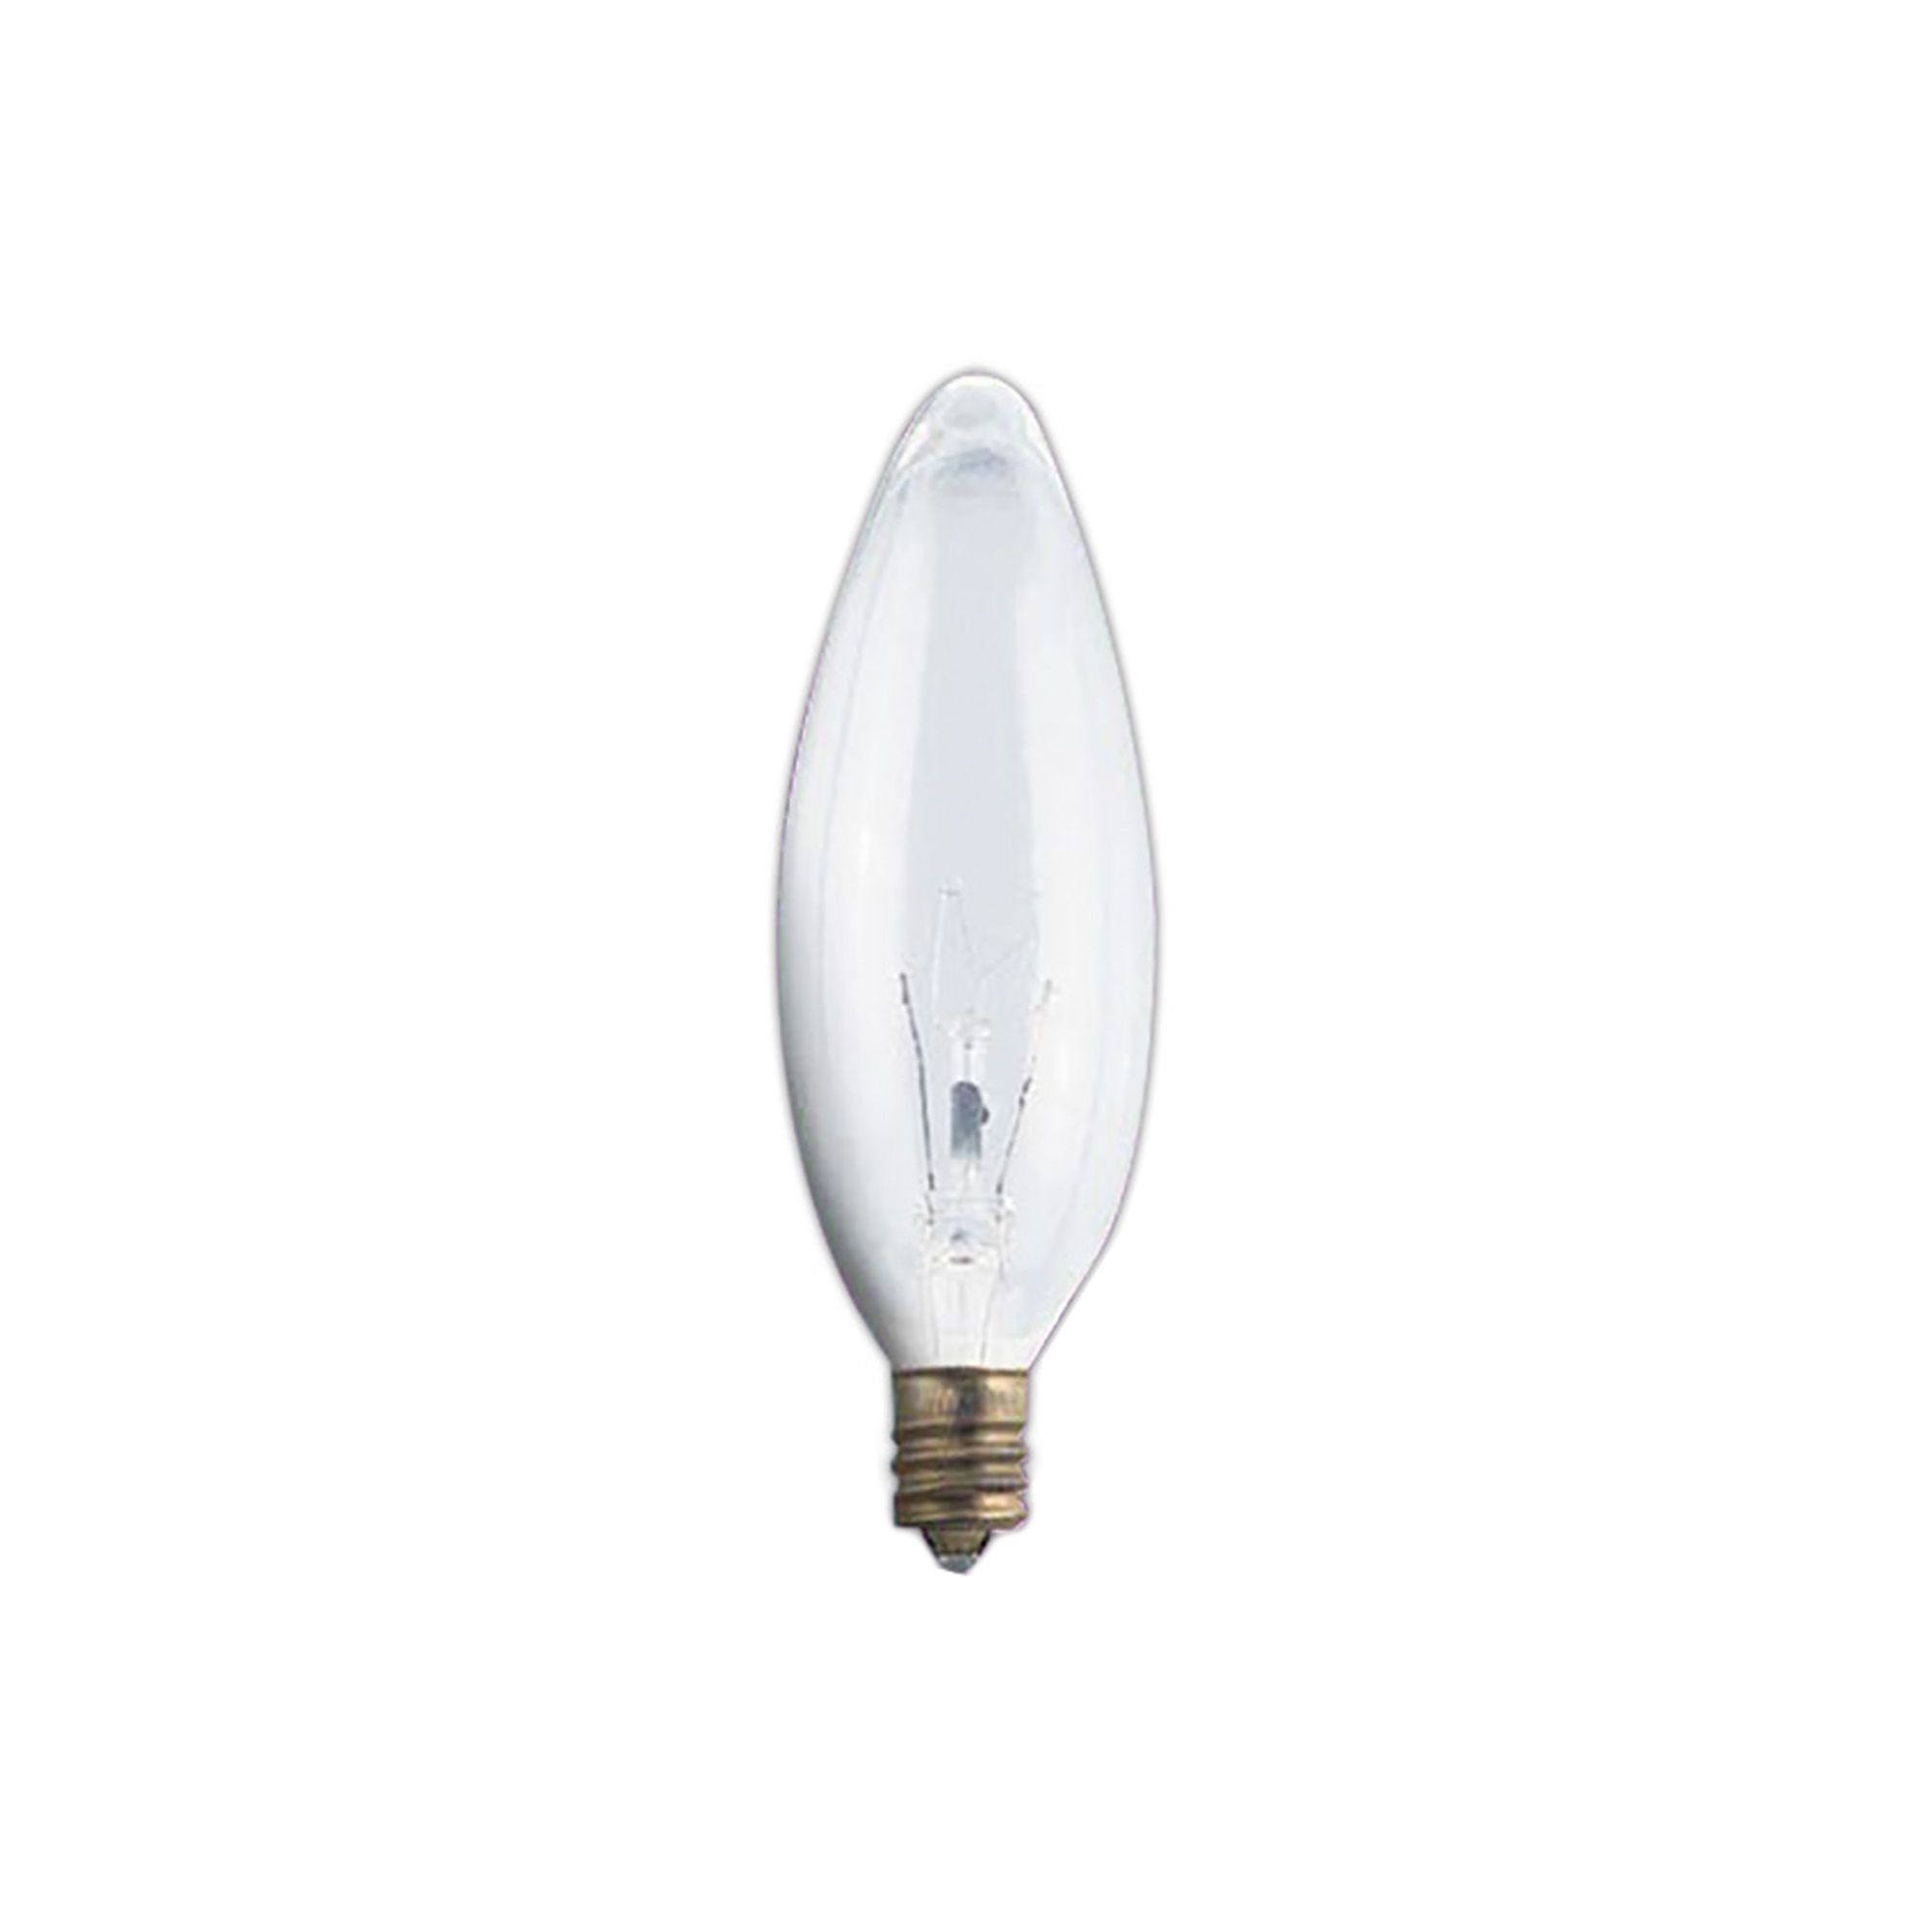 Ampoule incandescente, B10, chandelier, claire, blanc doux, 25 W, 2/pqt de  XTRICITY